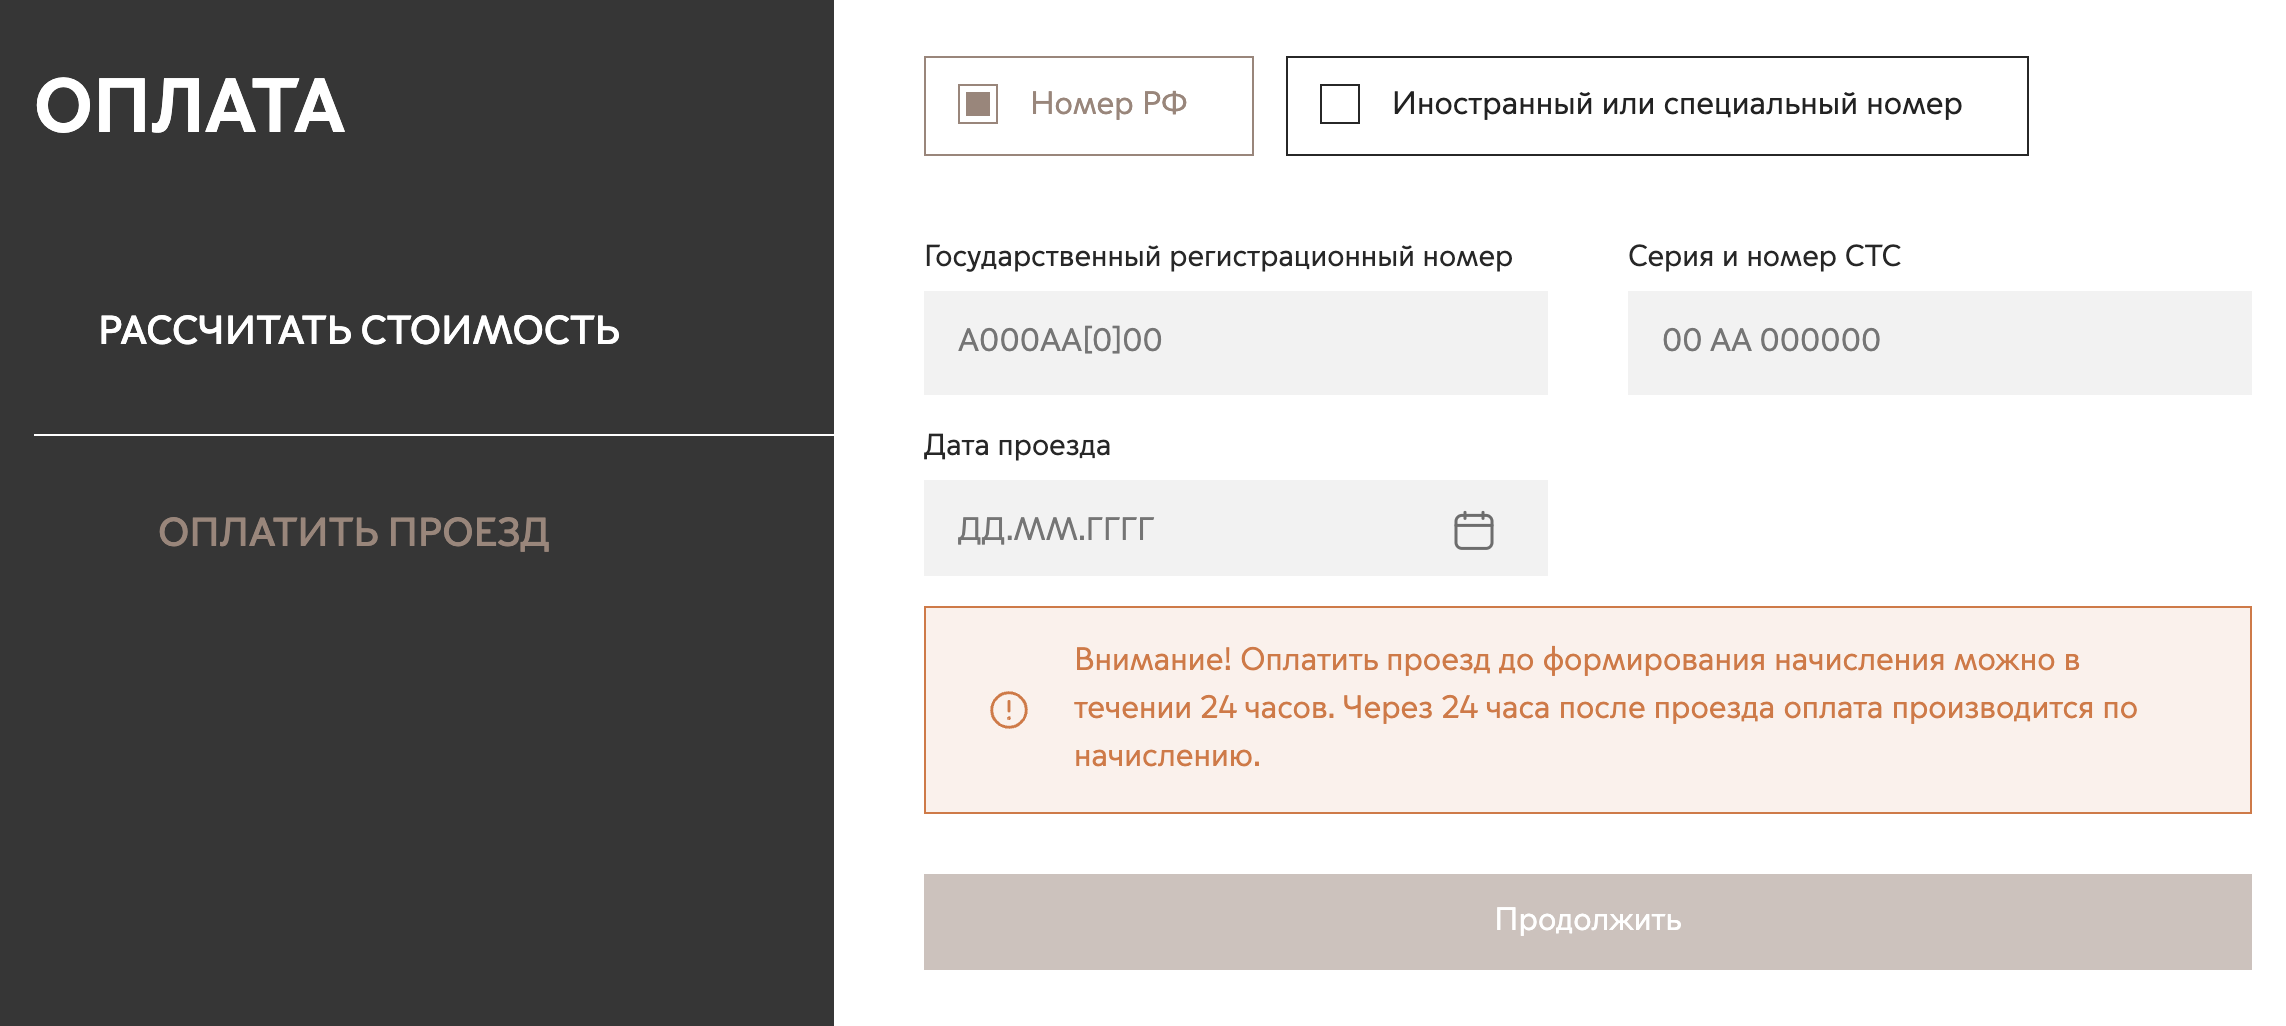 На официальном сайте МСД можно оплатить проезд и заранее, и когда поездка завершена. Источник: msd.mos.ru